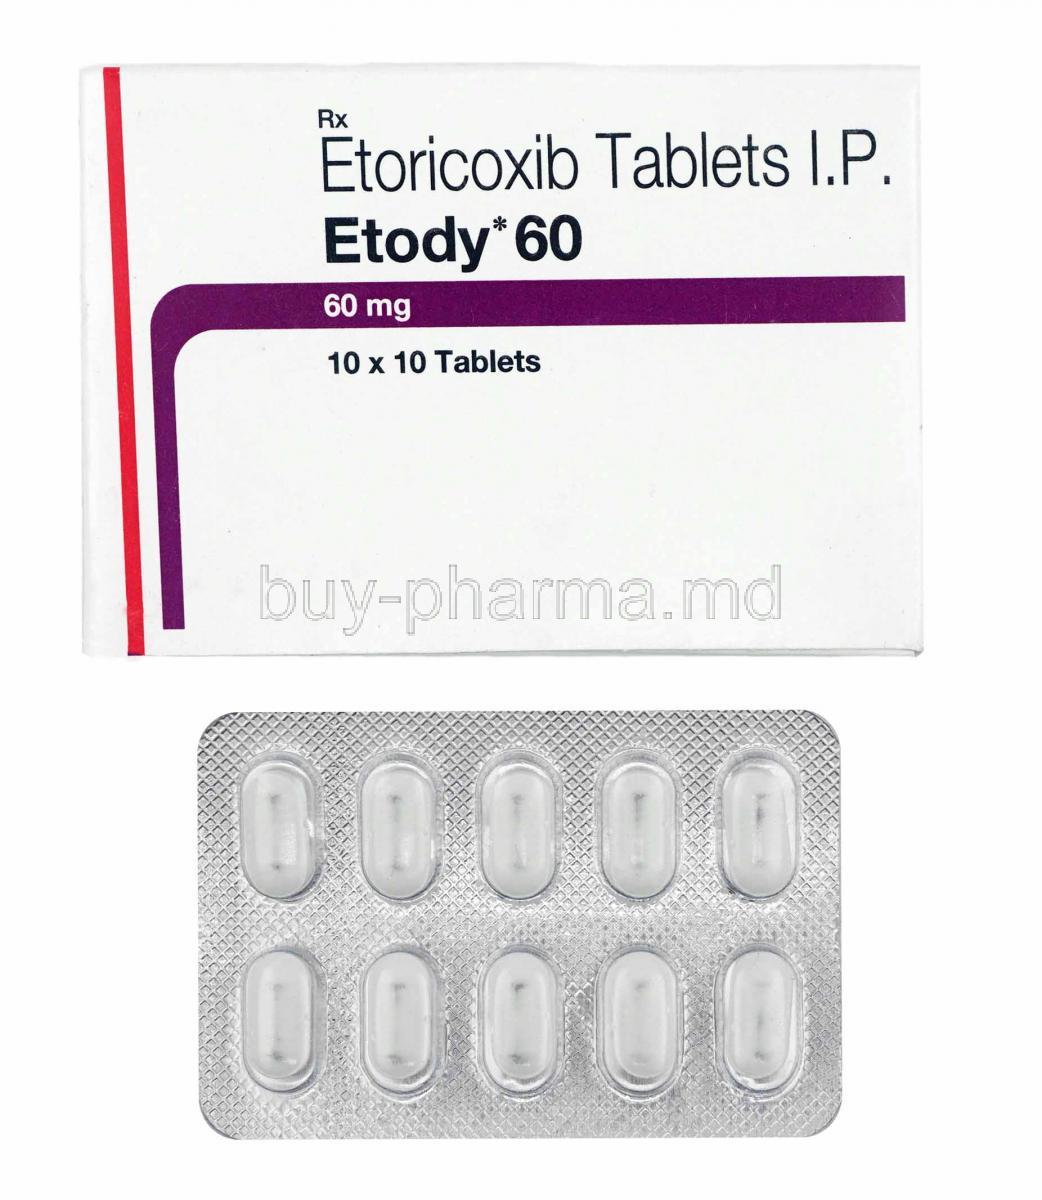 Etody, Etoricoxib 60mg box and tablets